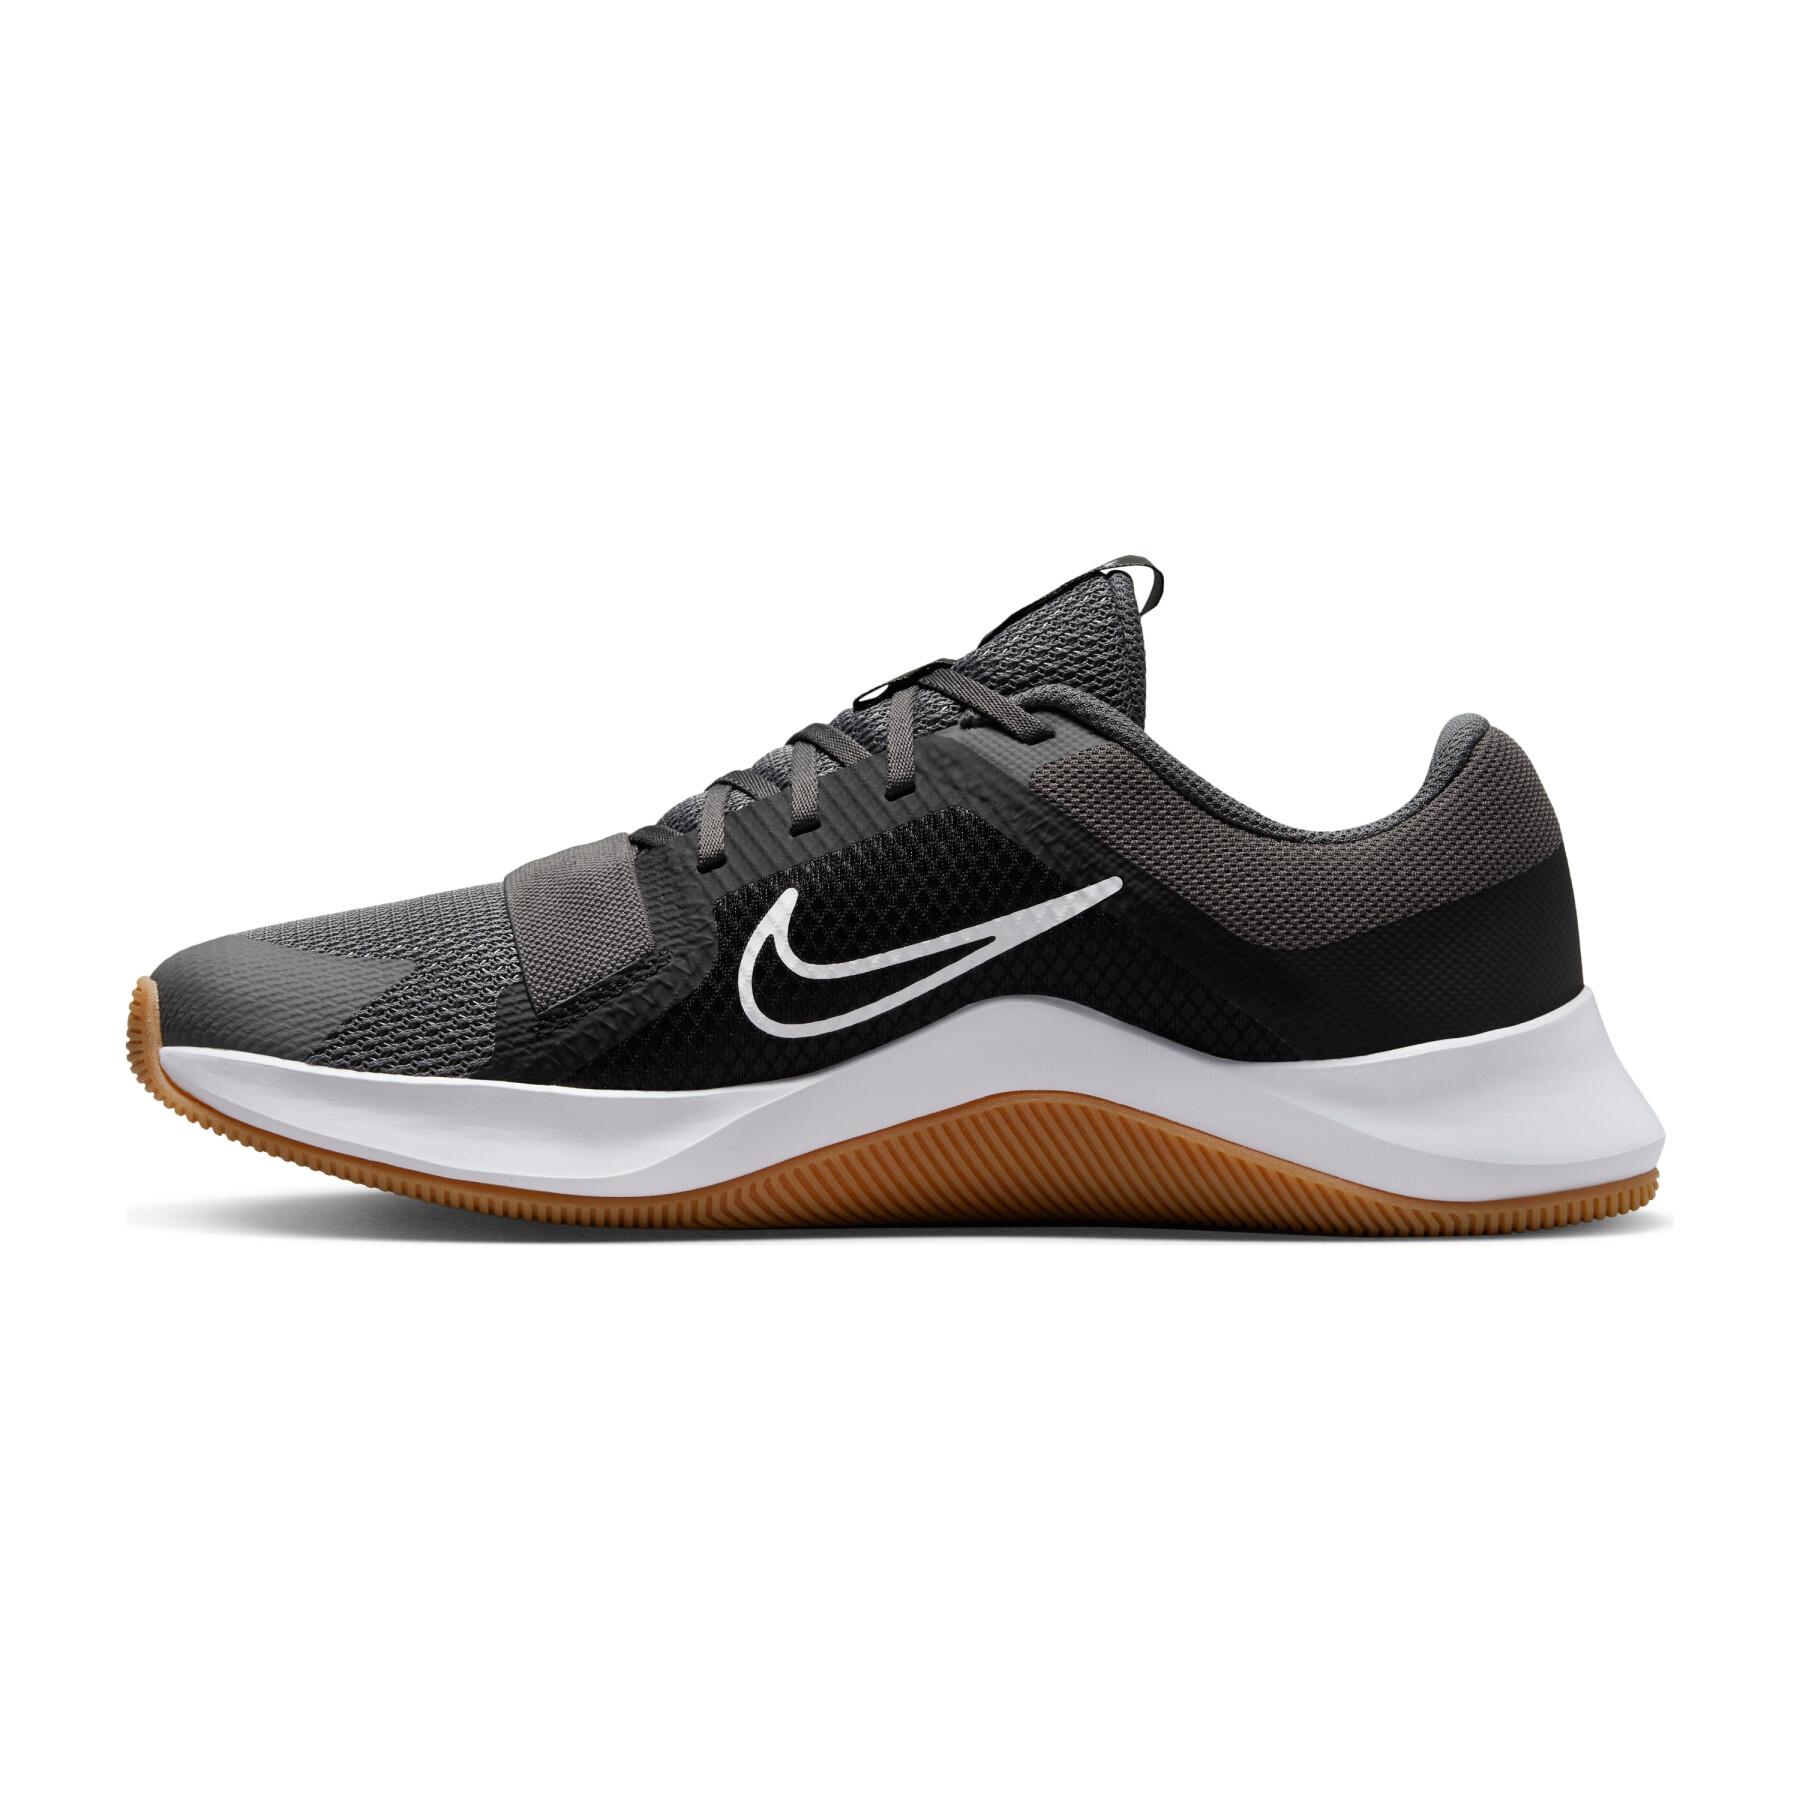 Schuhe indoor Nike MC Trainer 2